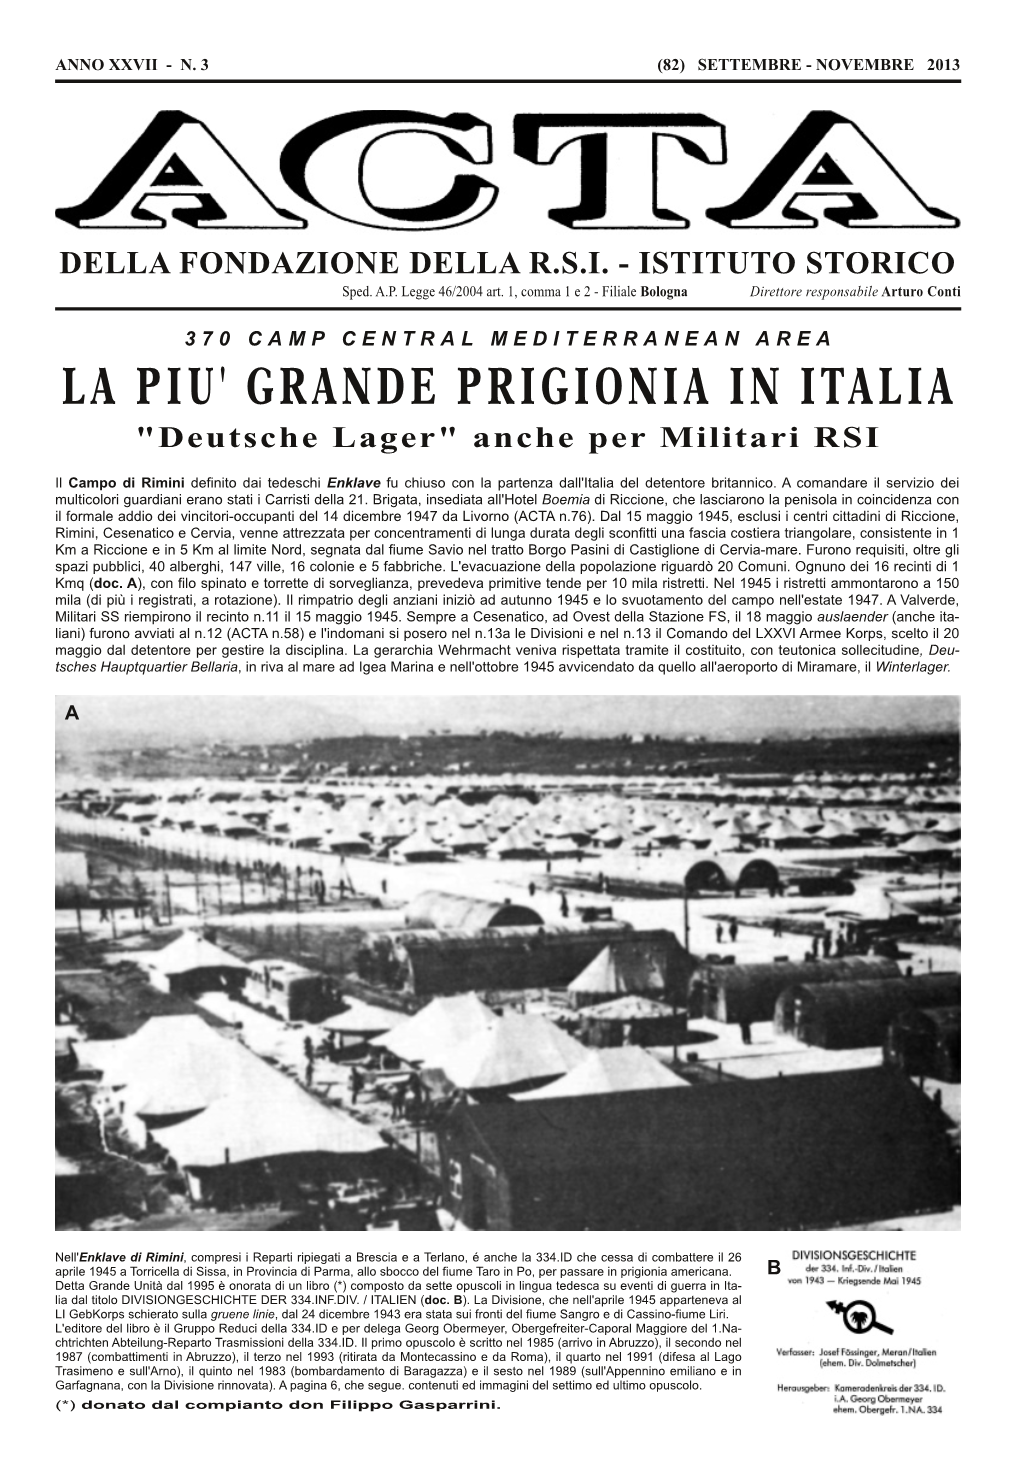 La Piu' Grande Prigionia in Italia